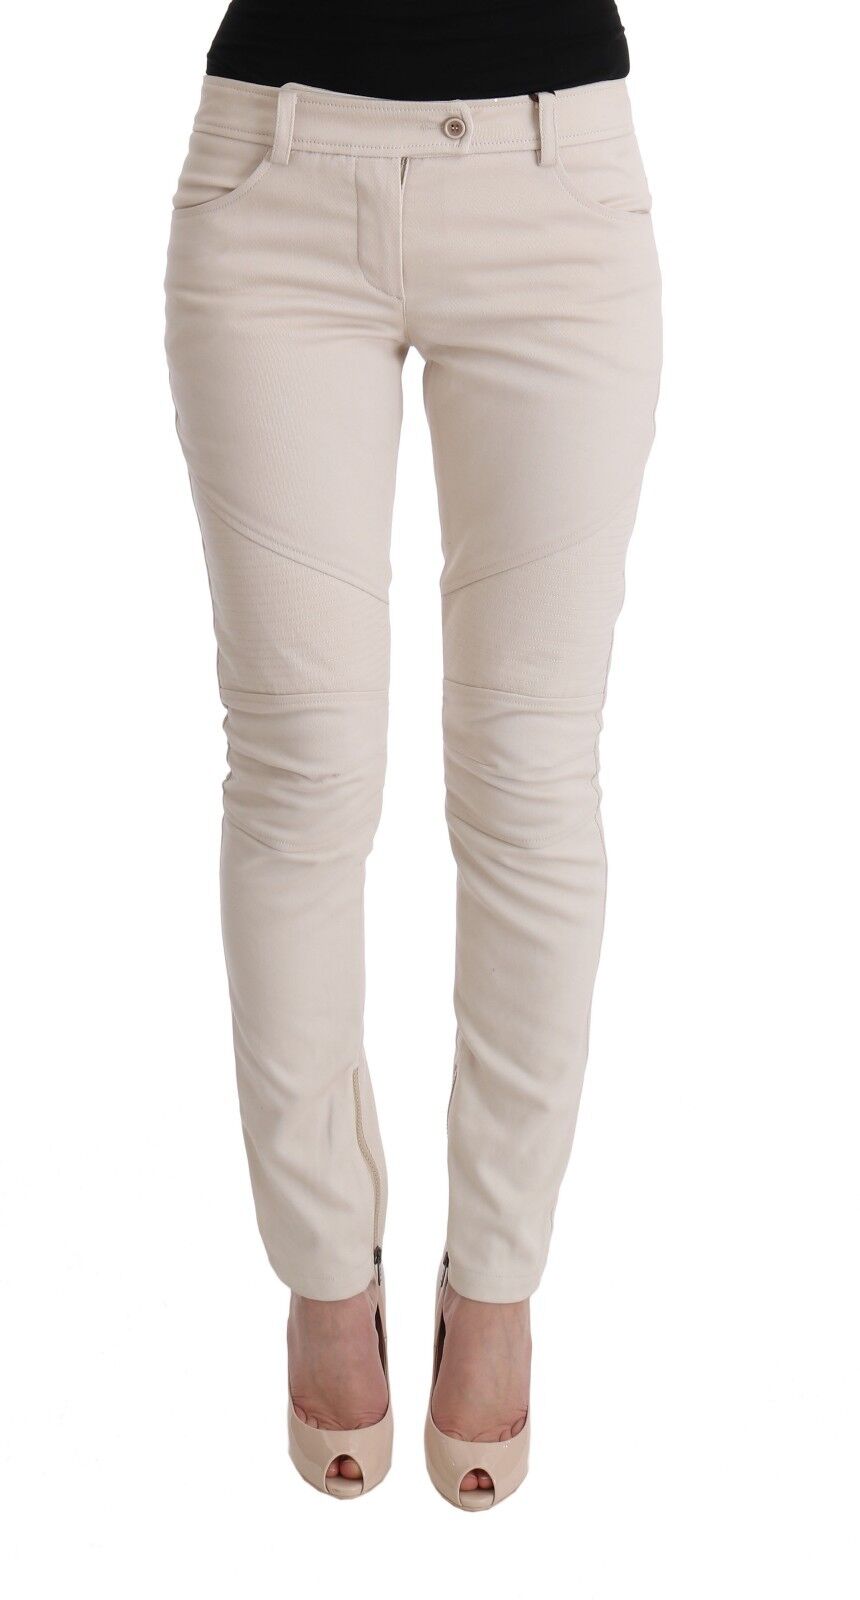 ERMANNO SCERVINO Джинсы Белые повседневные брюки узкого кроя s. IT40 / US6 / S Рекомендуемая розничная цена 450 долларов США.